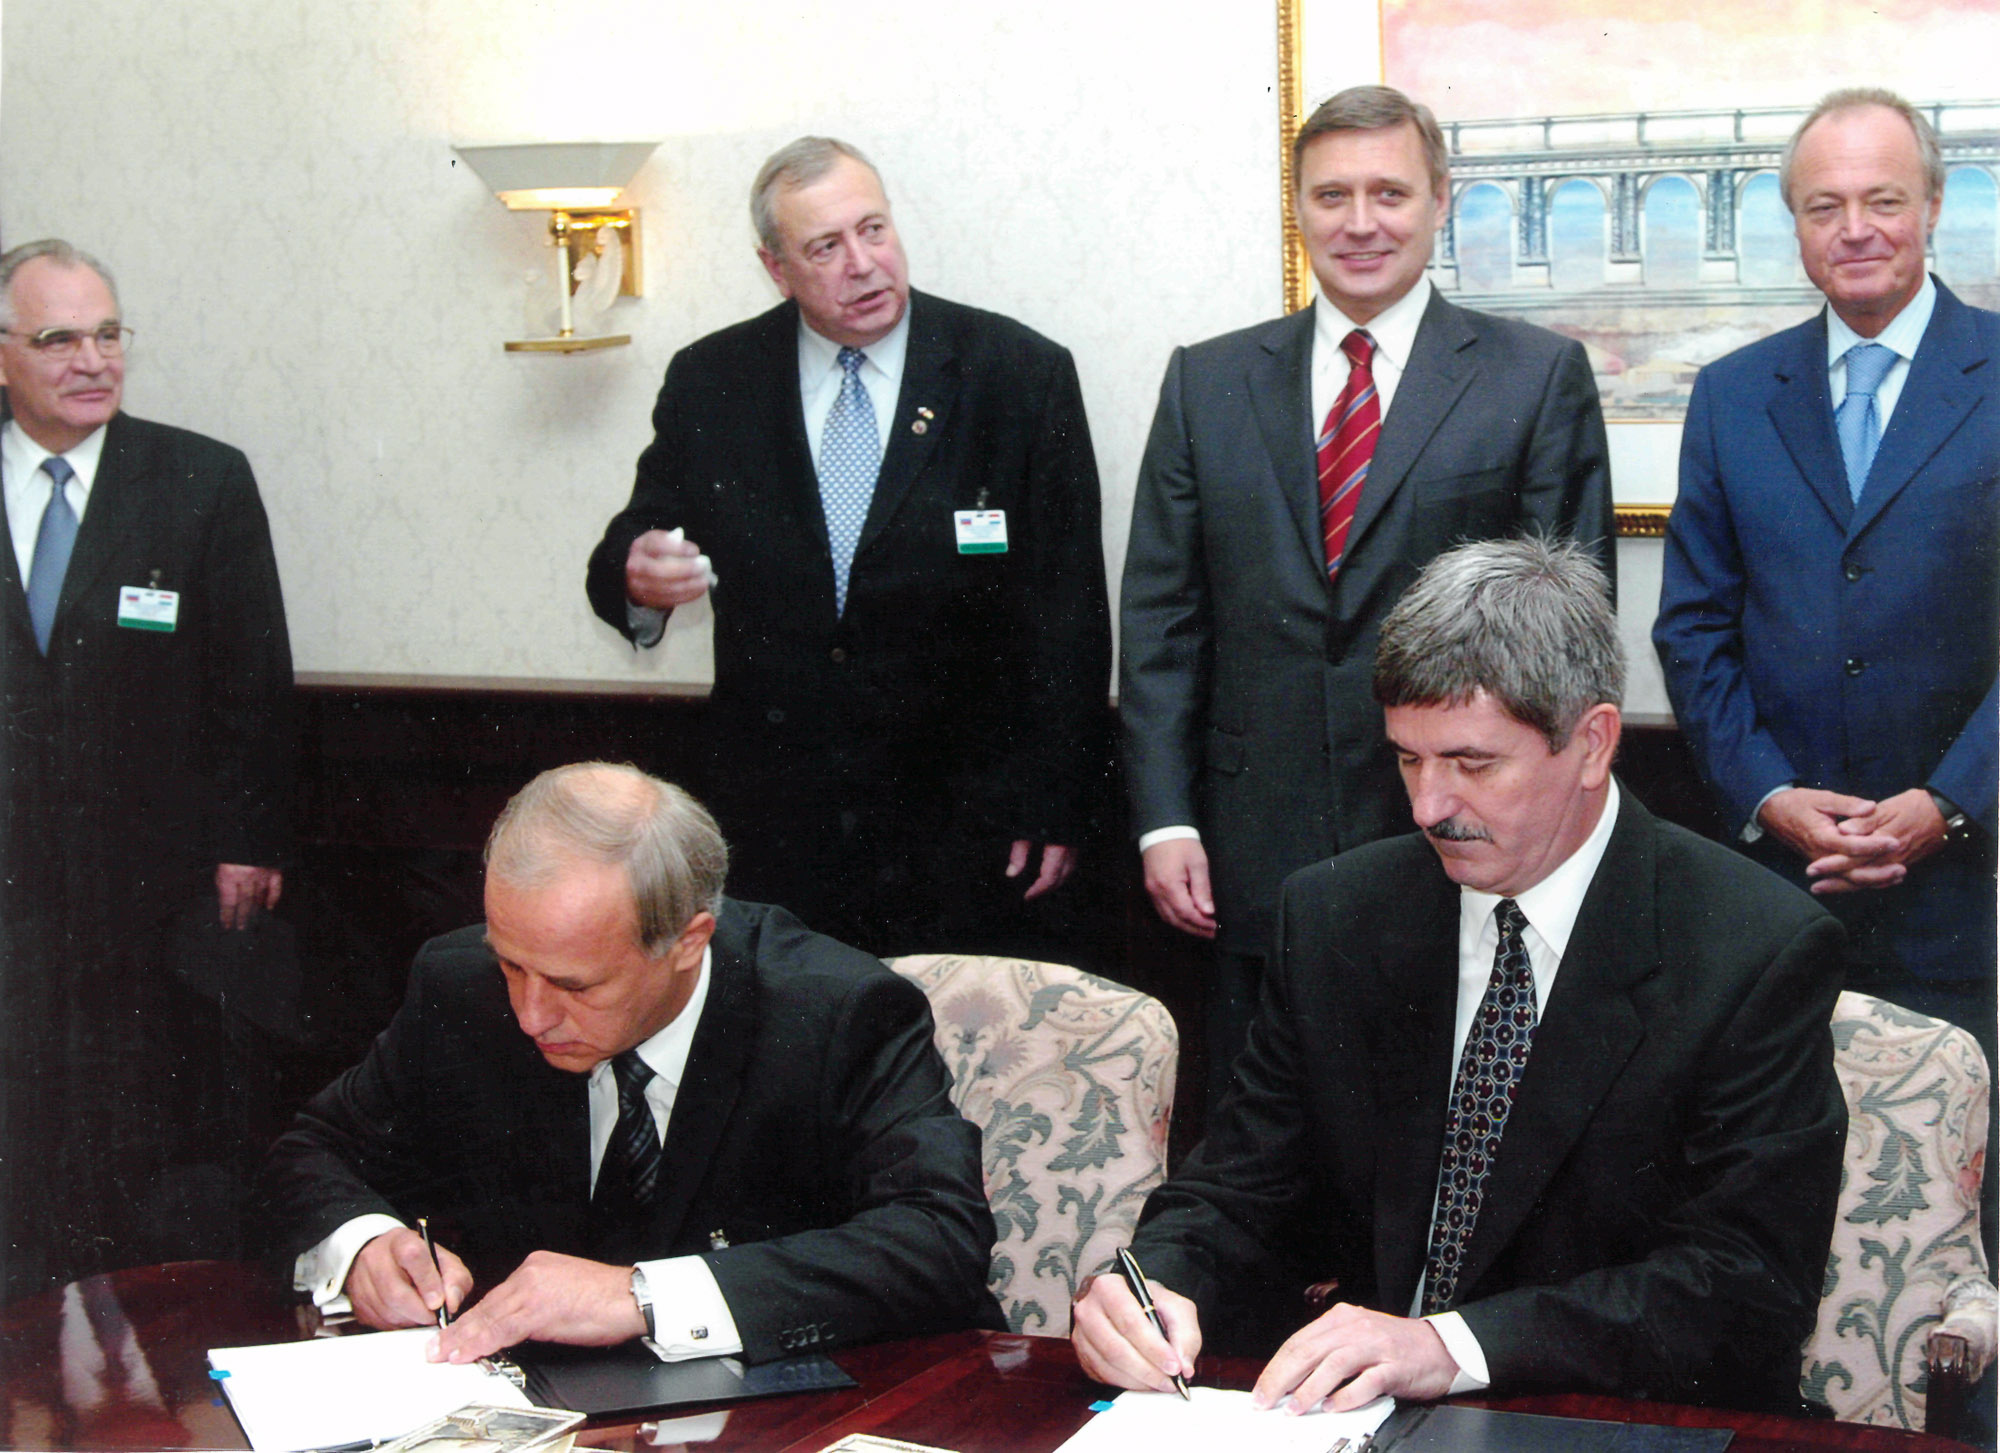 Подписание контракта между АЭС "Пакш" и Корпорацией "ТВЭЛ", сентябрь 2003 г.